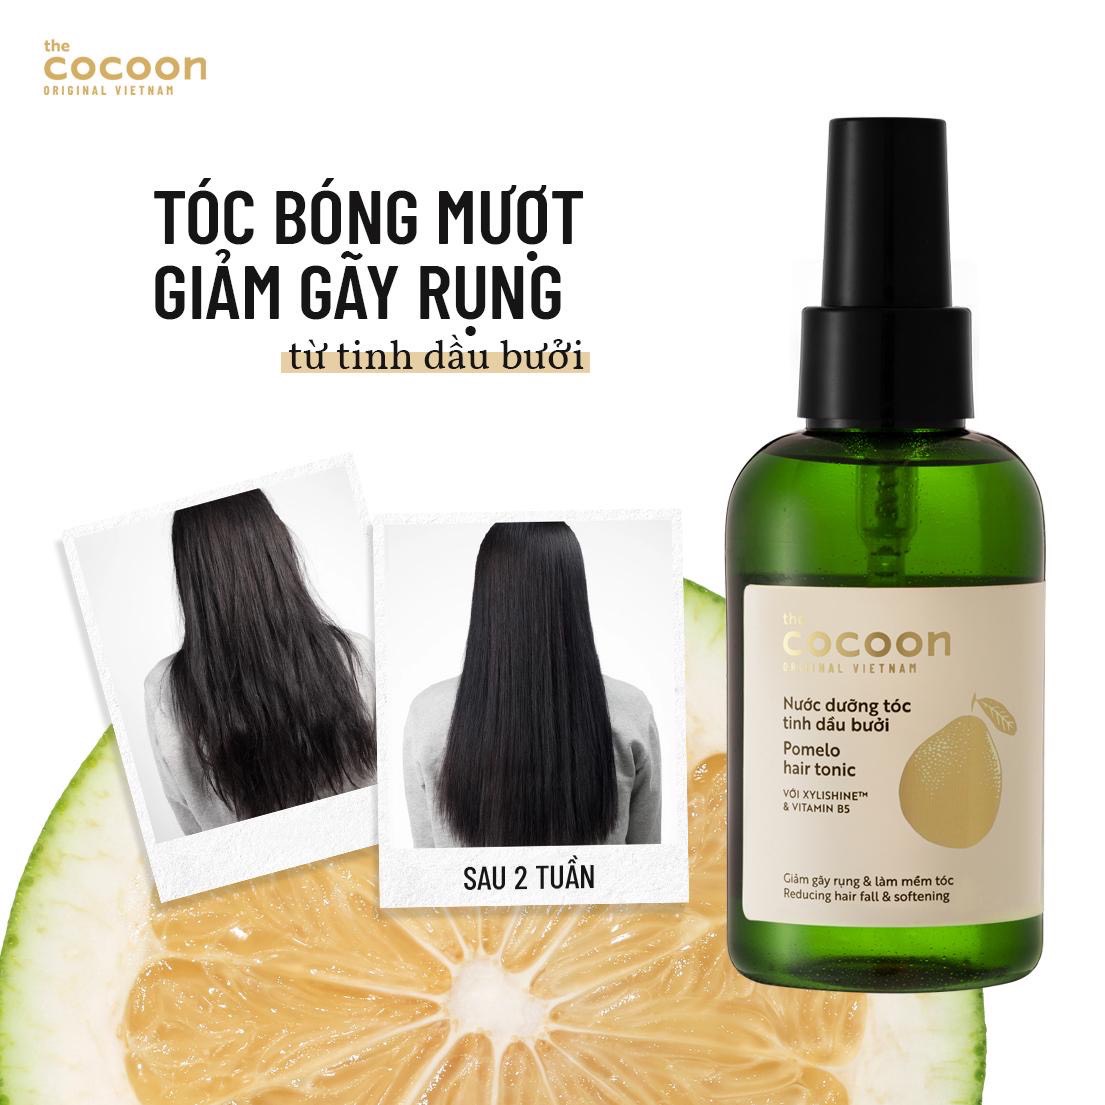 Hiệu quả Nước Dưỡng Tóc Cocoon Tinh Dầu Bưởi Pomelo Hair Tonic 140ml 